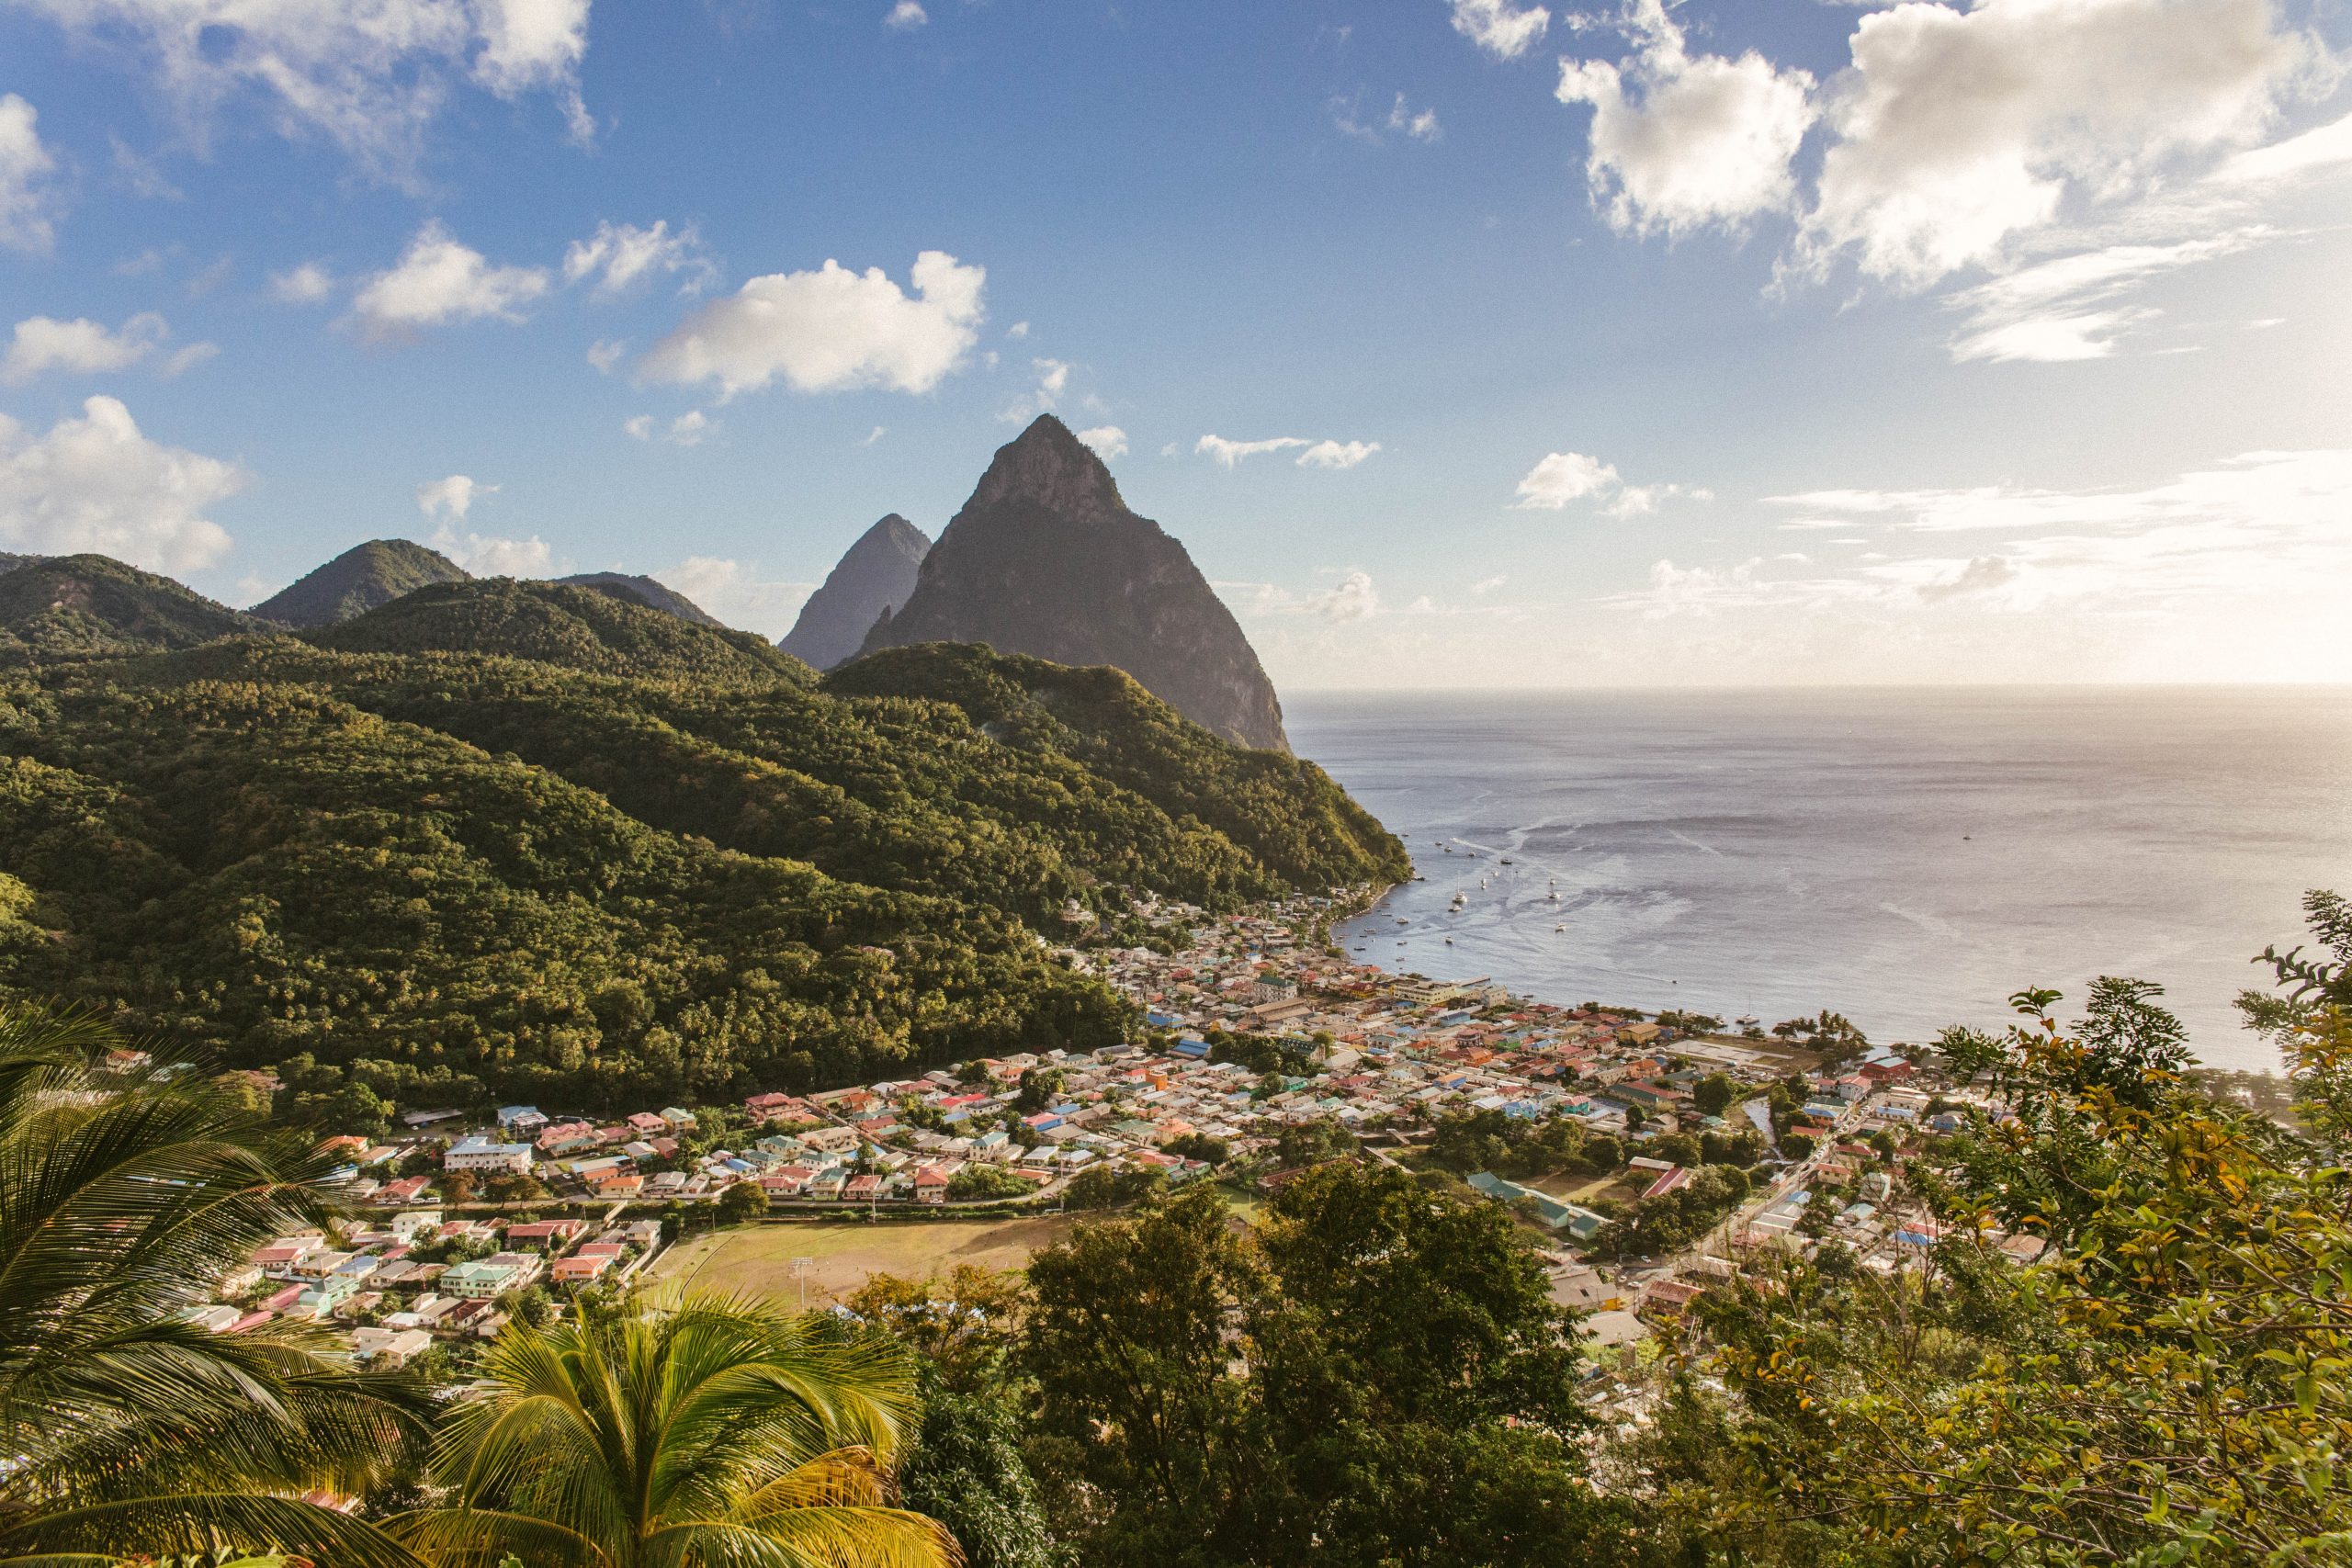 St Lucia stad och stora och lilla piton bergen